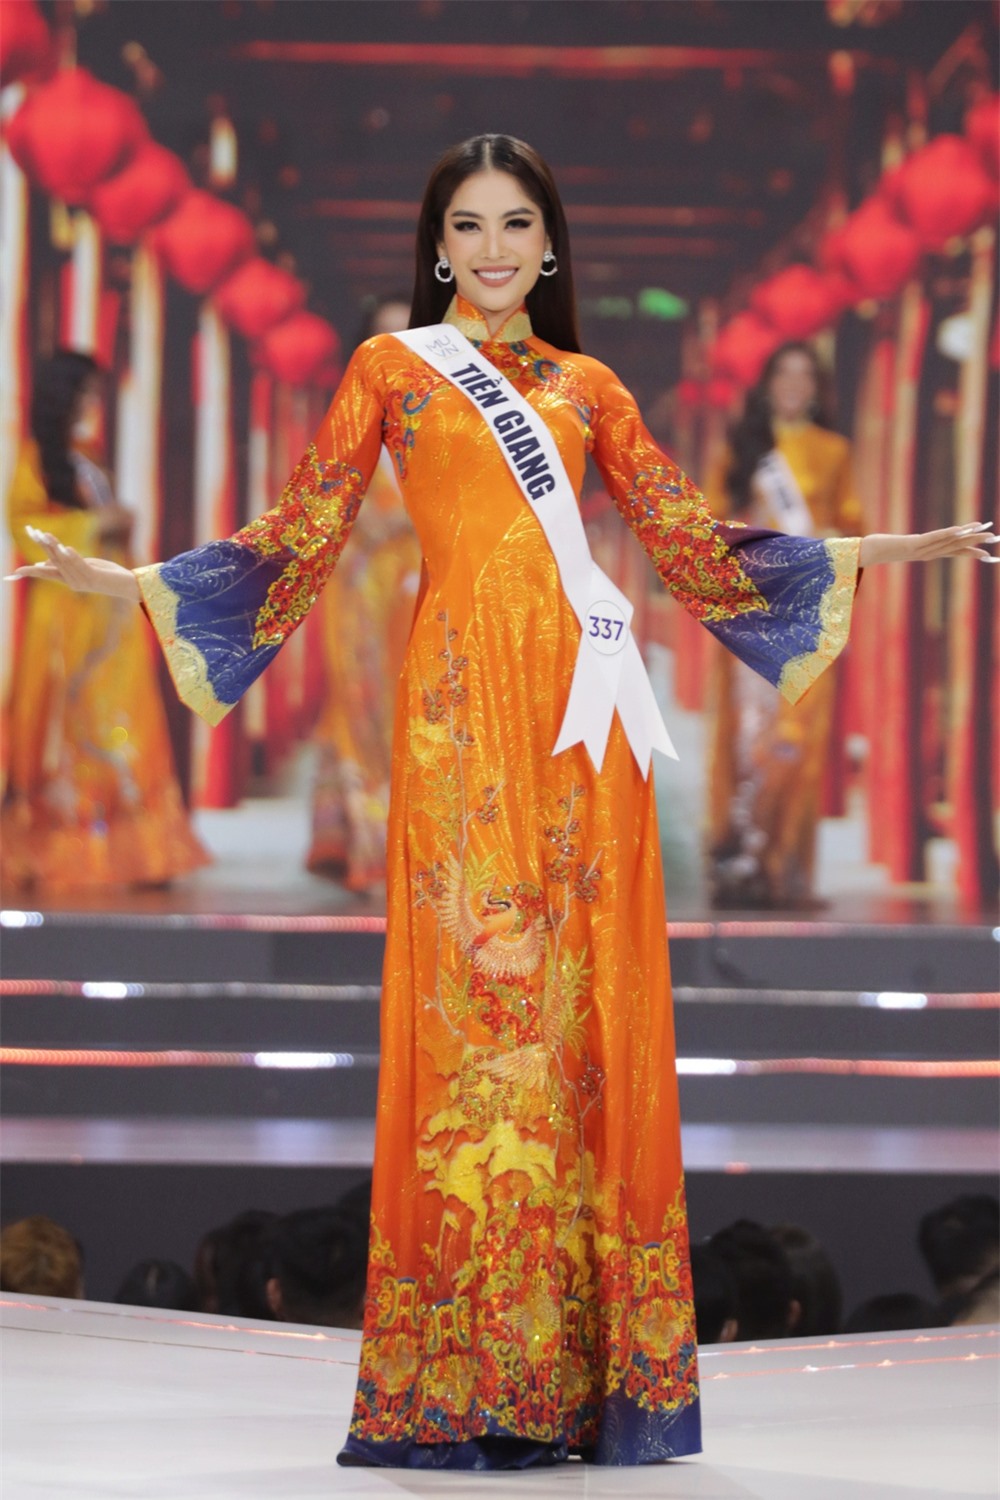 Bán kết Hoa hậu Hoàn vũ Việt Nam 2022: Loạt ứng viên cùng khoe vẻ nóng bỏng - Ảnh 8.